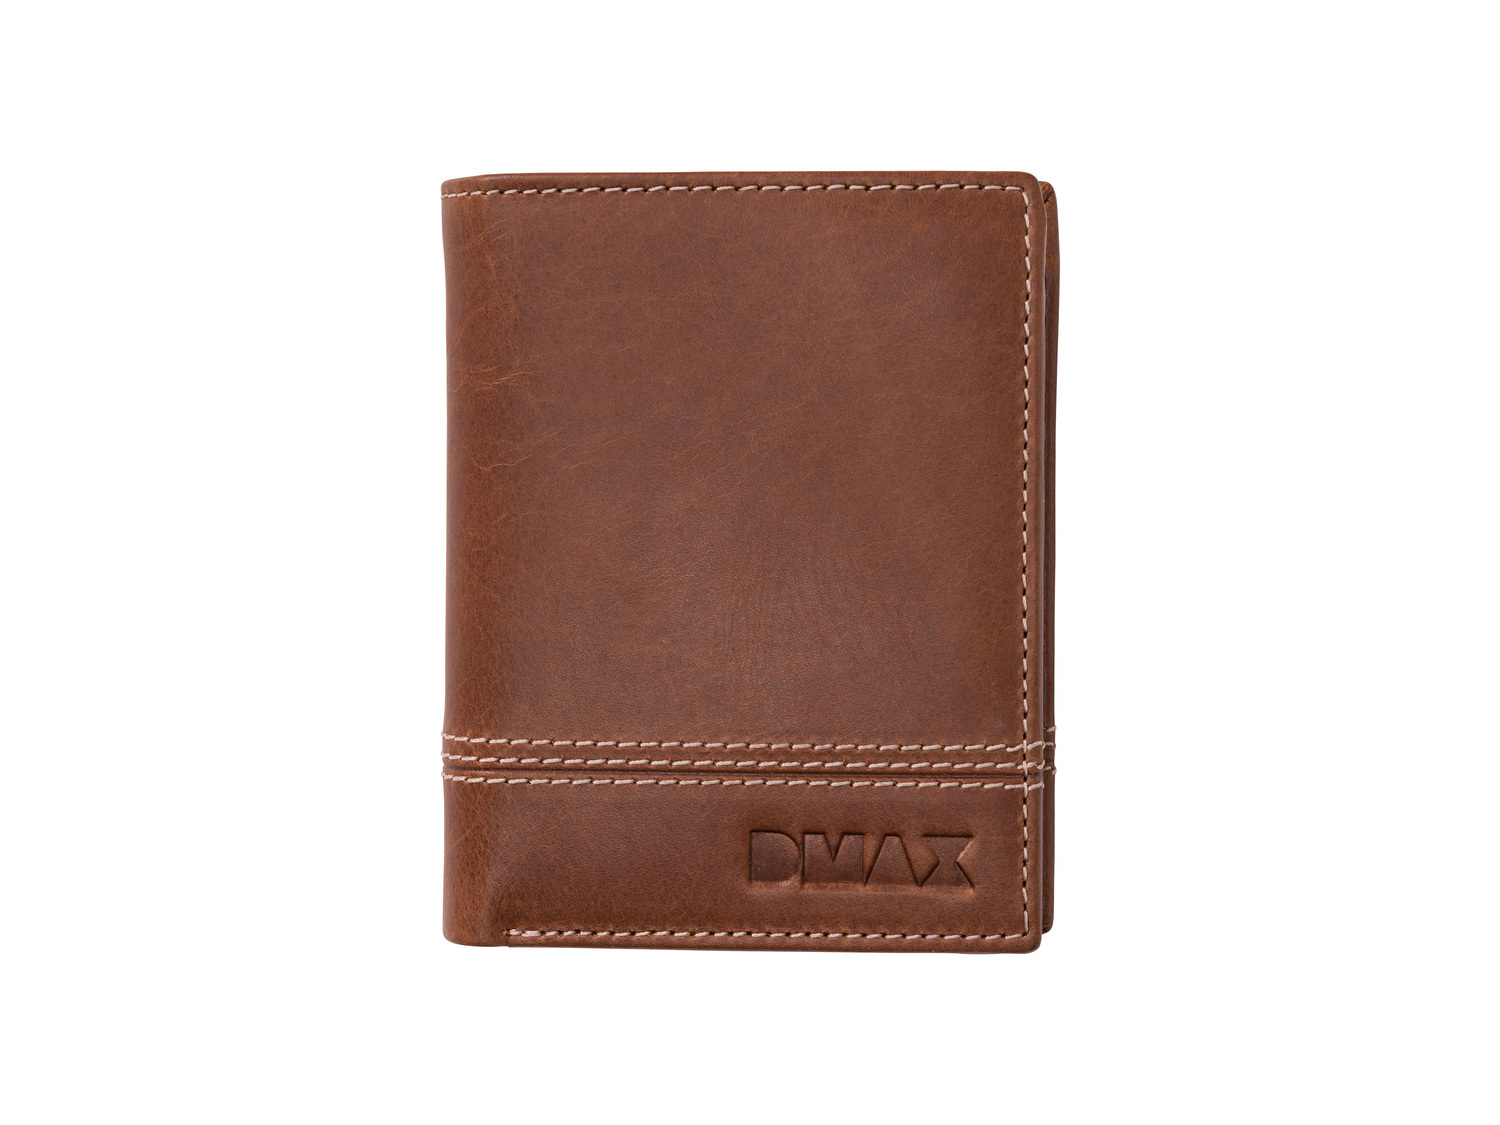 Portafoglio D&#039;MAX Dmax, prezzo 9.99 €  
In cuoio
Caratteristiche